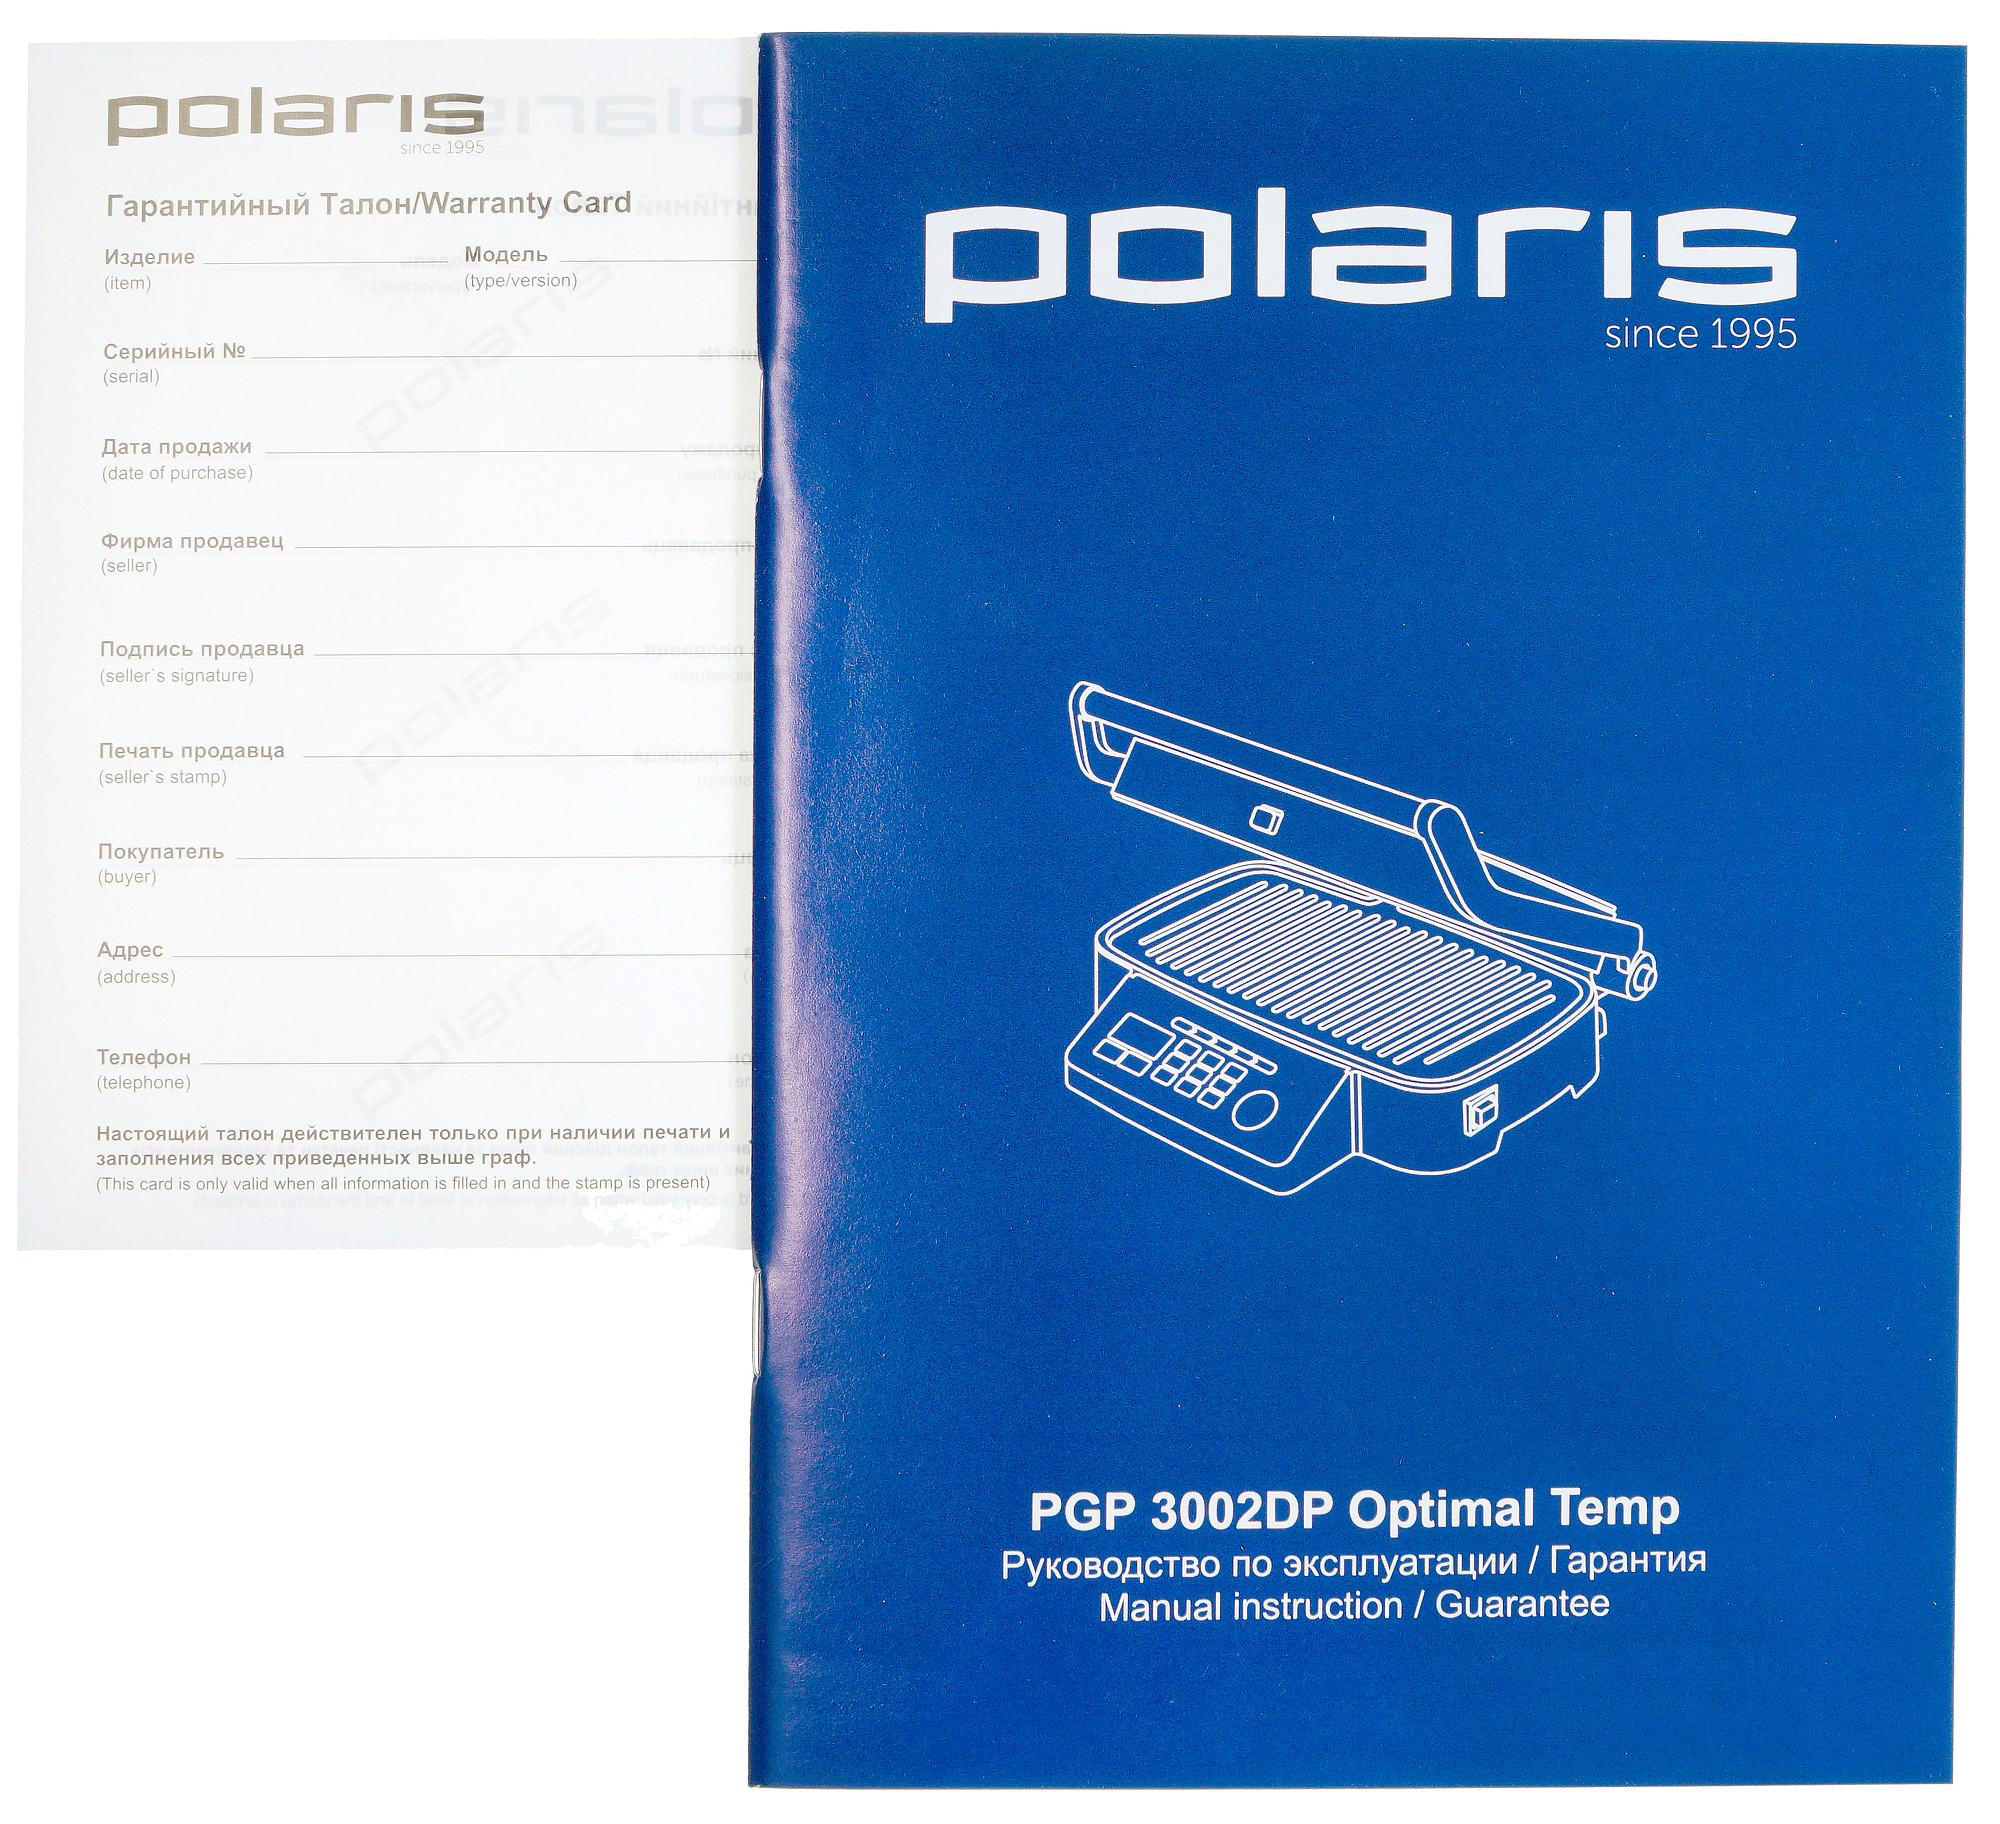 Polaris PGP 3002dp OPTIMAL Temp панель. Гриль Polaris 3002dp. Гриль Polaris PGP 3002dp OPTIMAL Temp. Polaris since 1995 гриль. Pgp 3002dp optimal temp